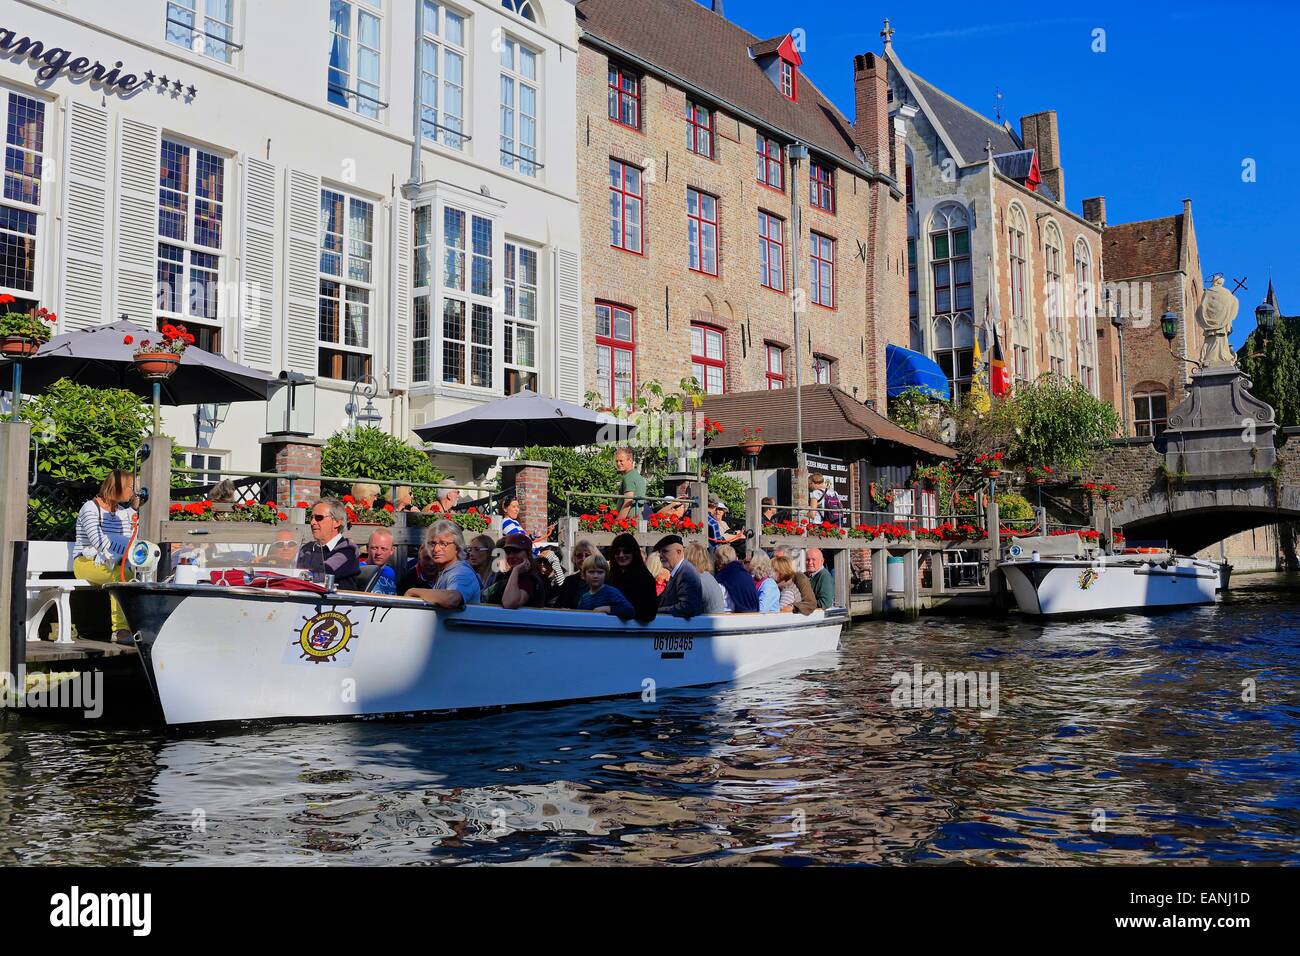 Ausflugsboote auf dem Kanal außerhalb des Hotel de Orangerie, Altstadt von Brügge, Belgien. Brügge Altstadt Canal Tour Boot Touristen city Stockfoto